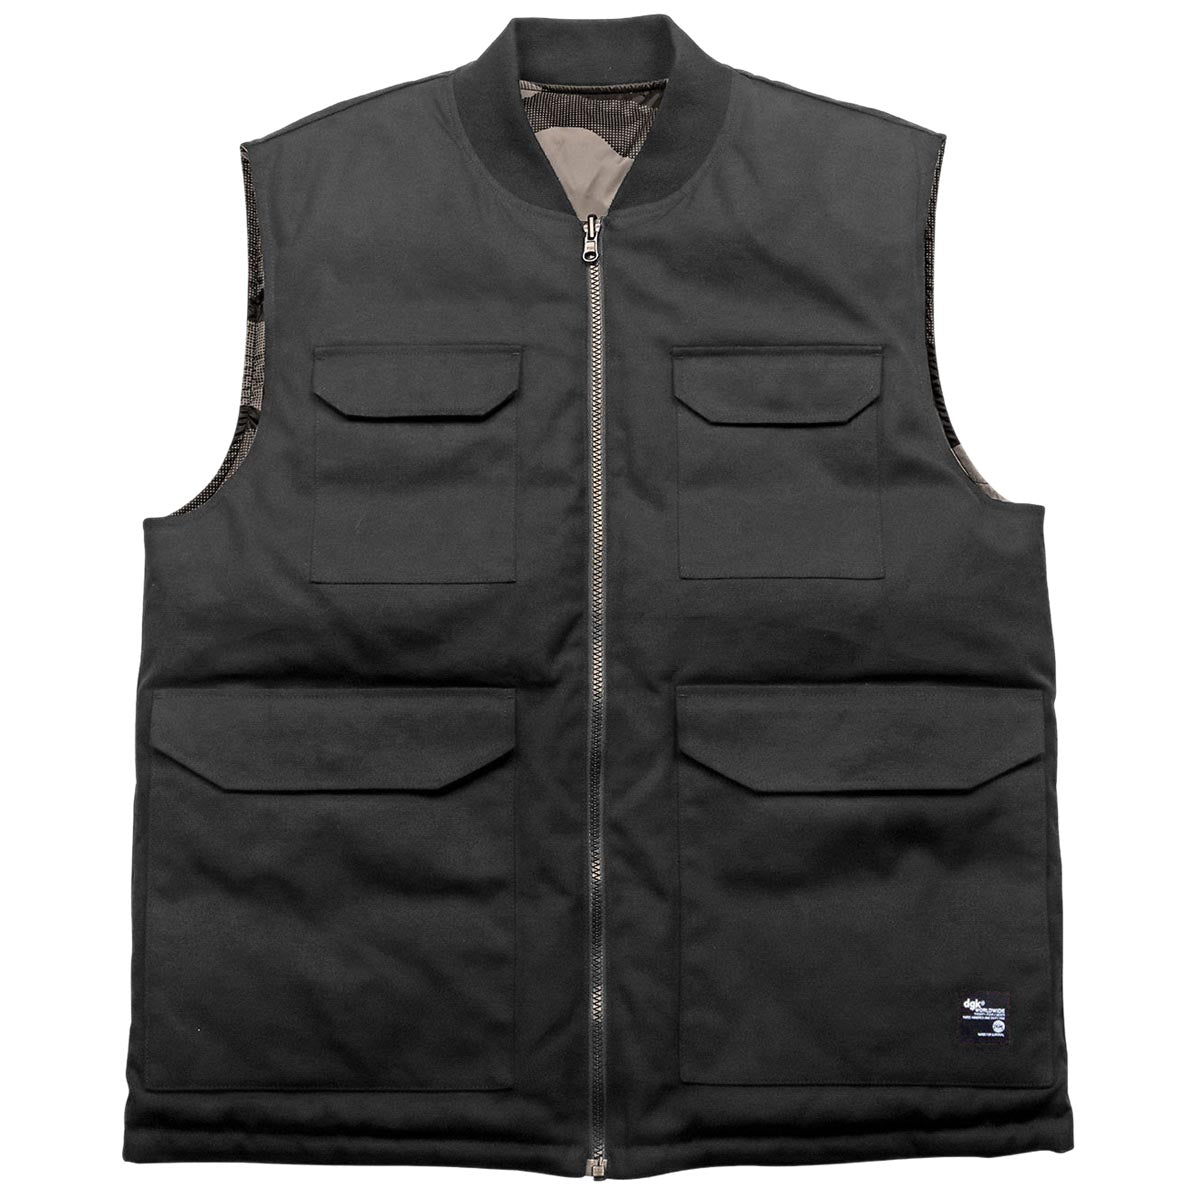 DGK Contra Reversible Vest Jacket - Black Camo image 3